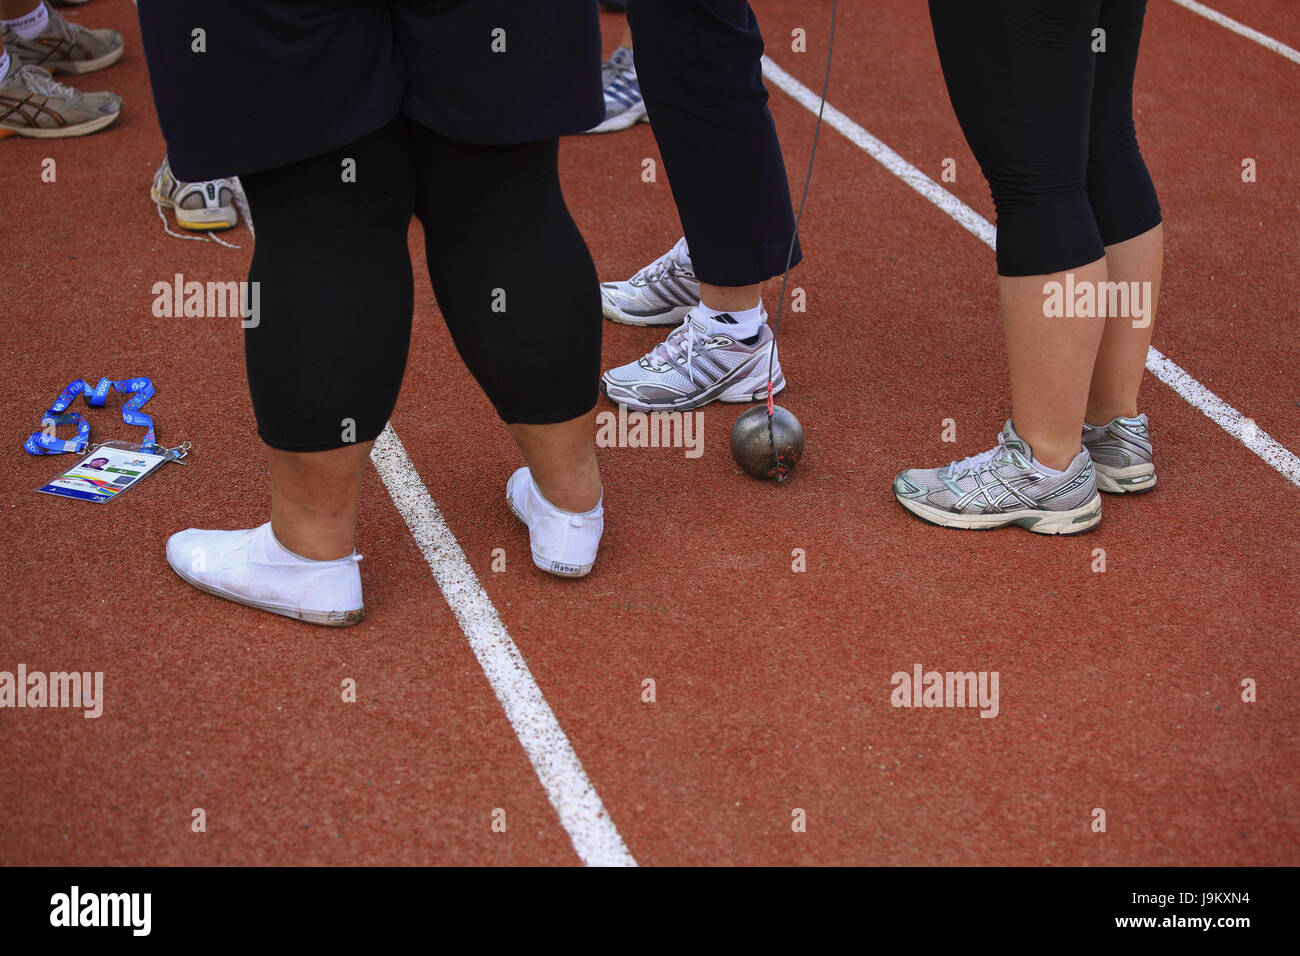 Des chaussures de sport à lancer de marteau lors des Jeux du Commonwealth pour la jeunesse, Maharashtra, Inde, Asie Banque D'Images